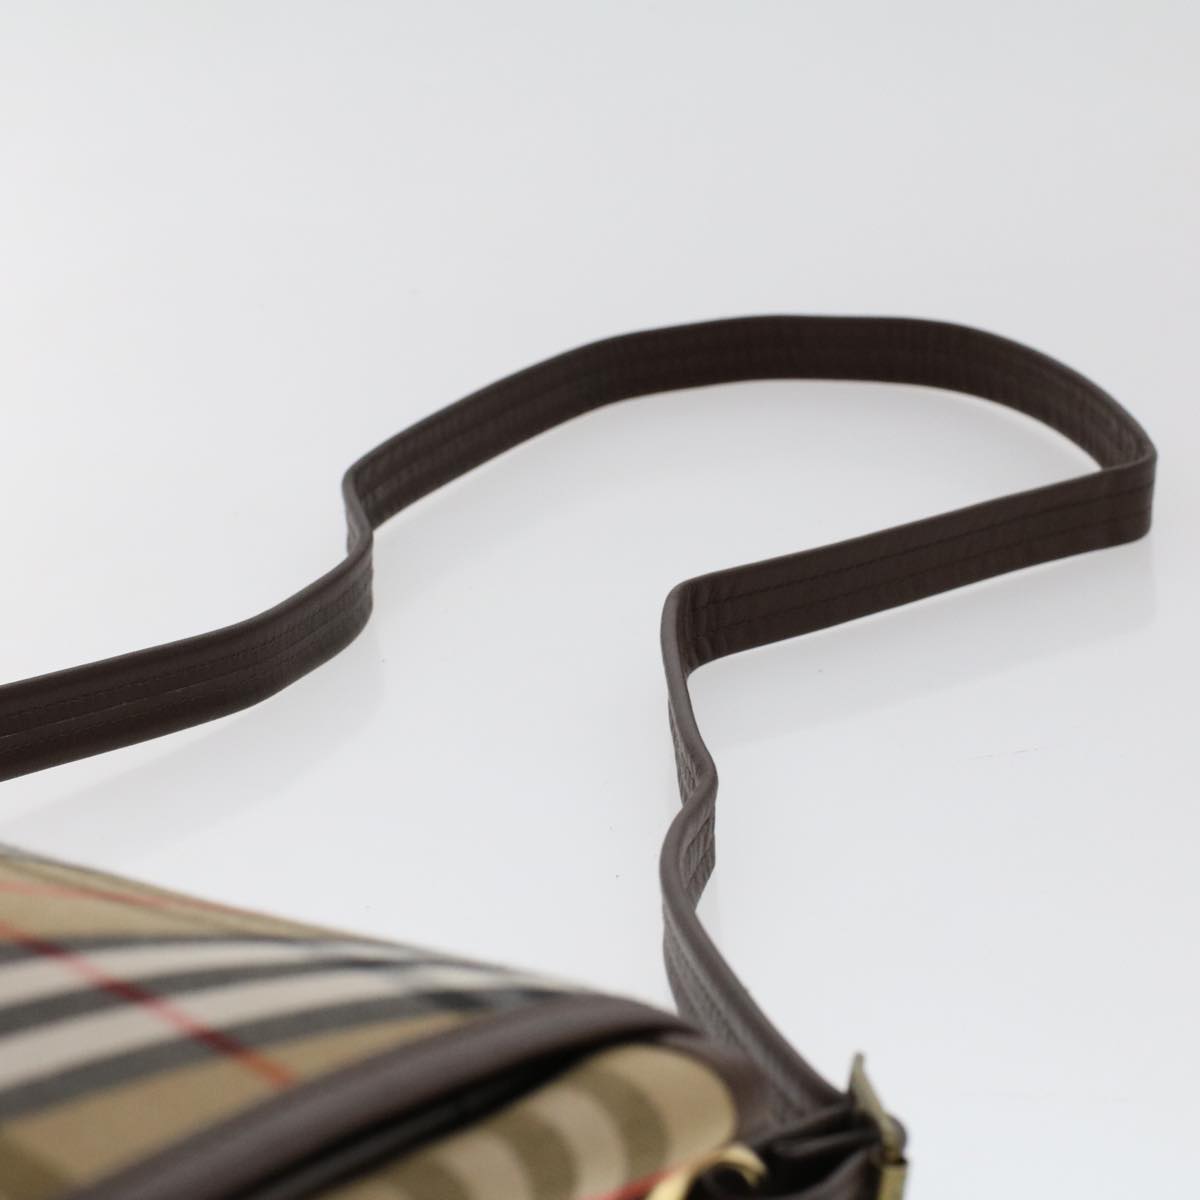 Burberrys Nova Check Shoulder Bag Canvas Beige Brown Auth 48165